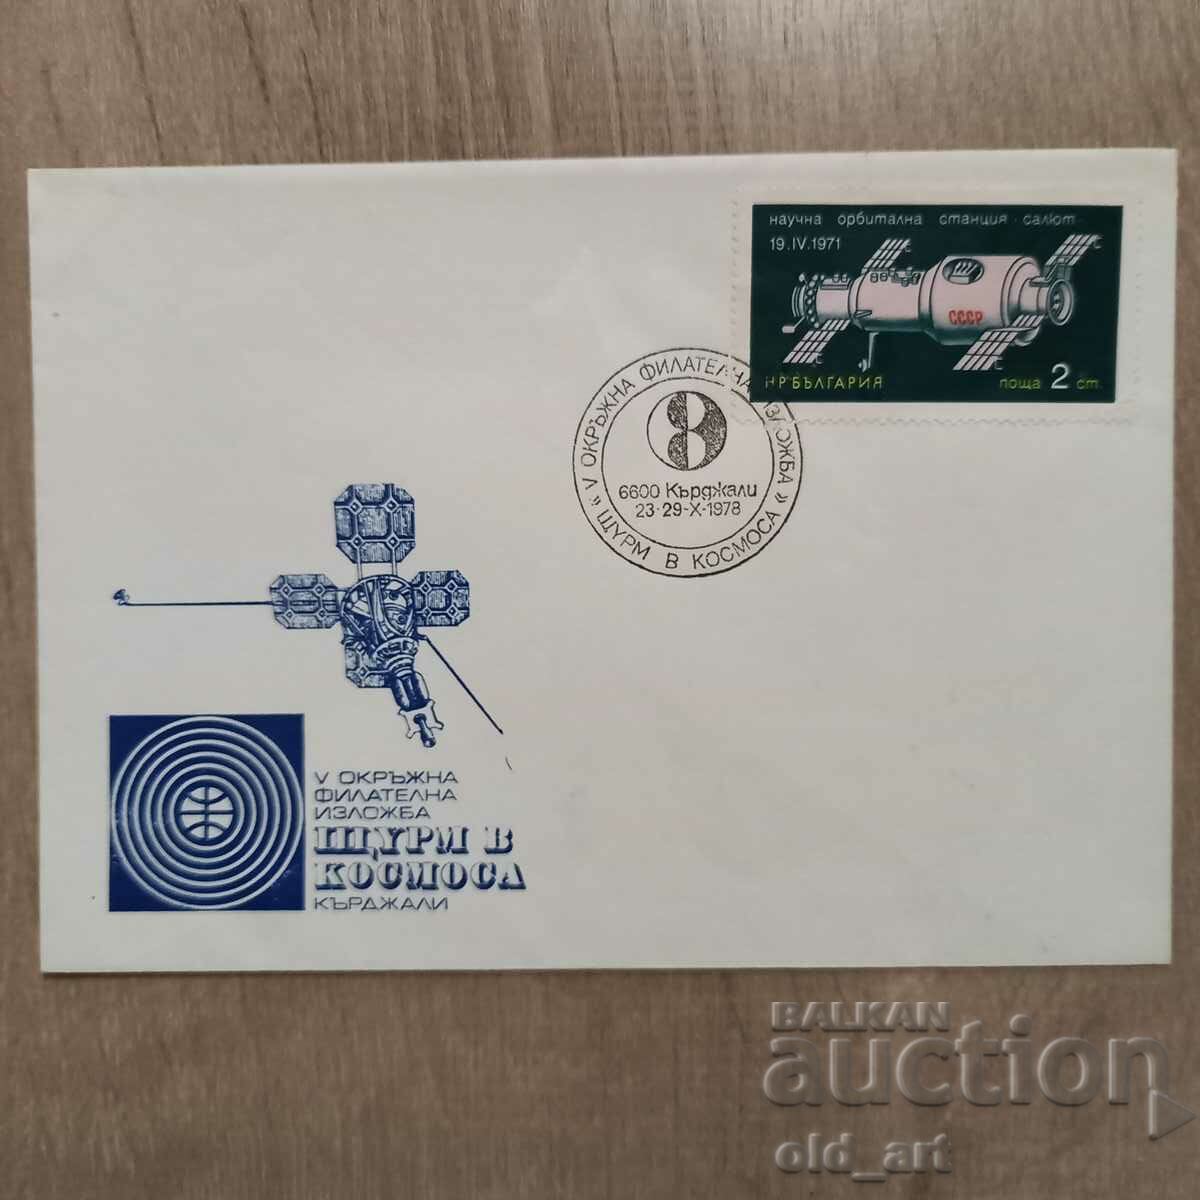 Postal envelope - V Okr. filet. exhibition Storm in Space